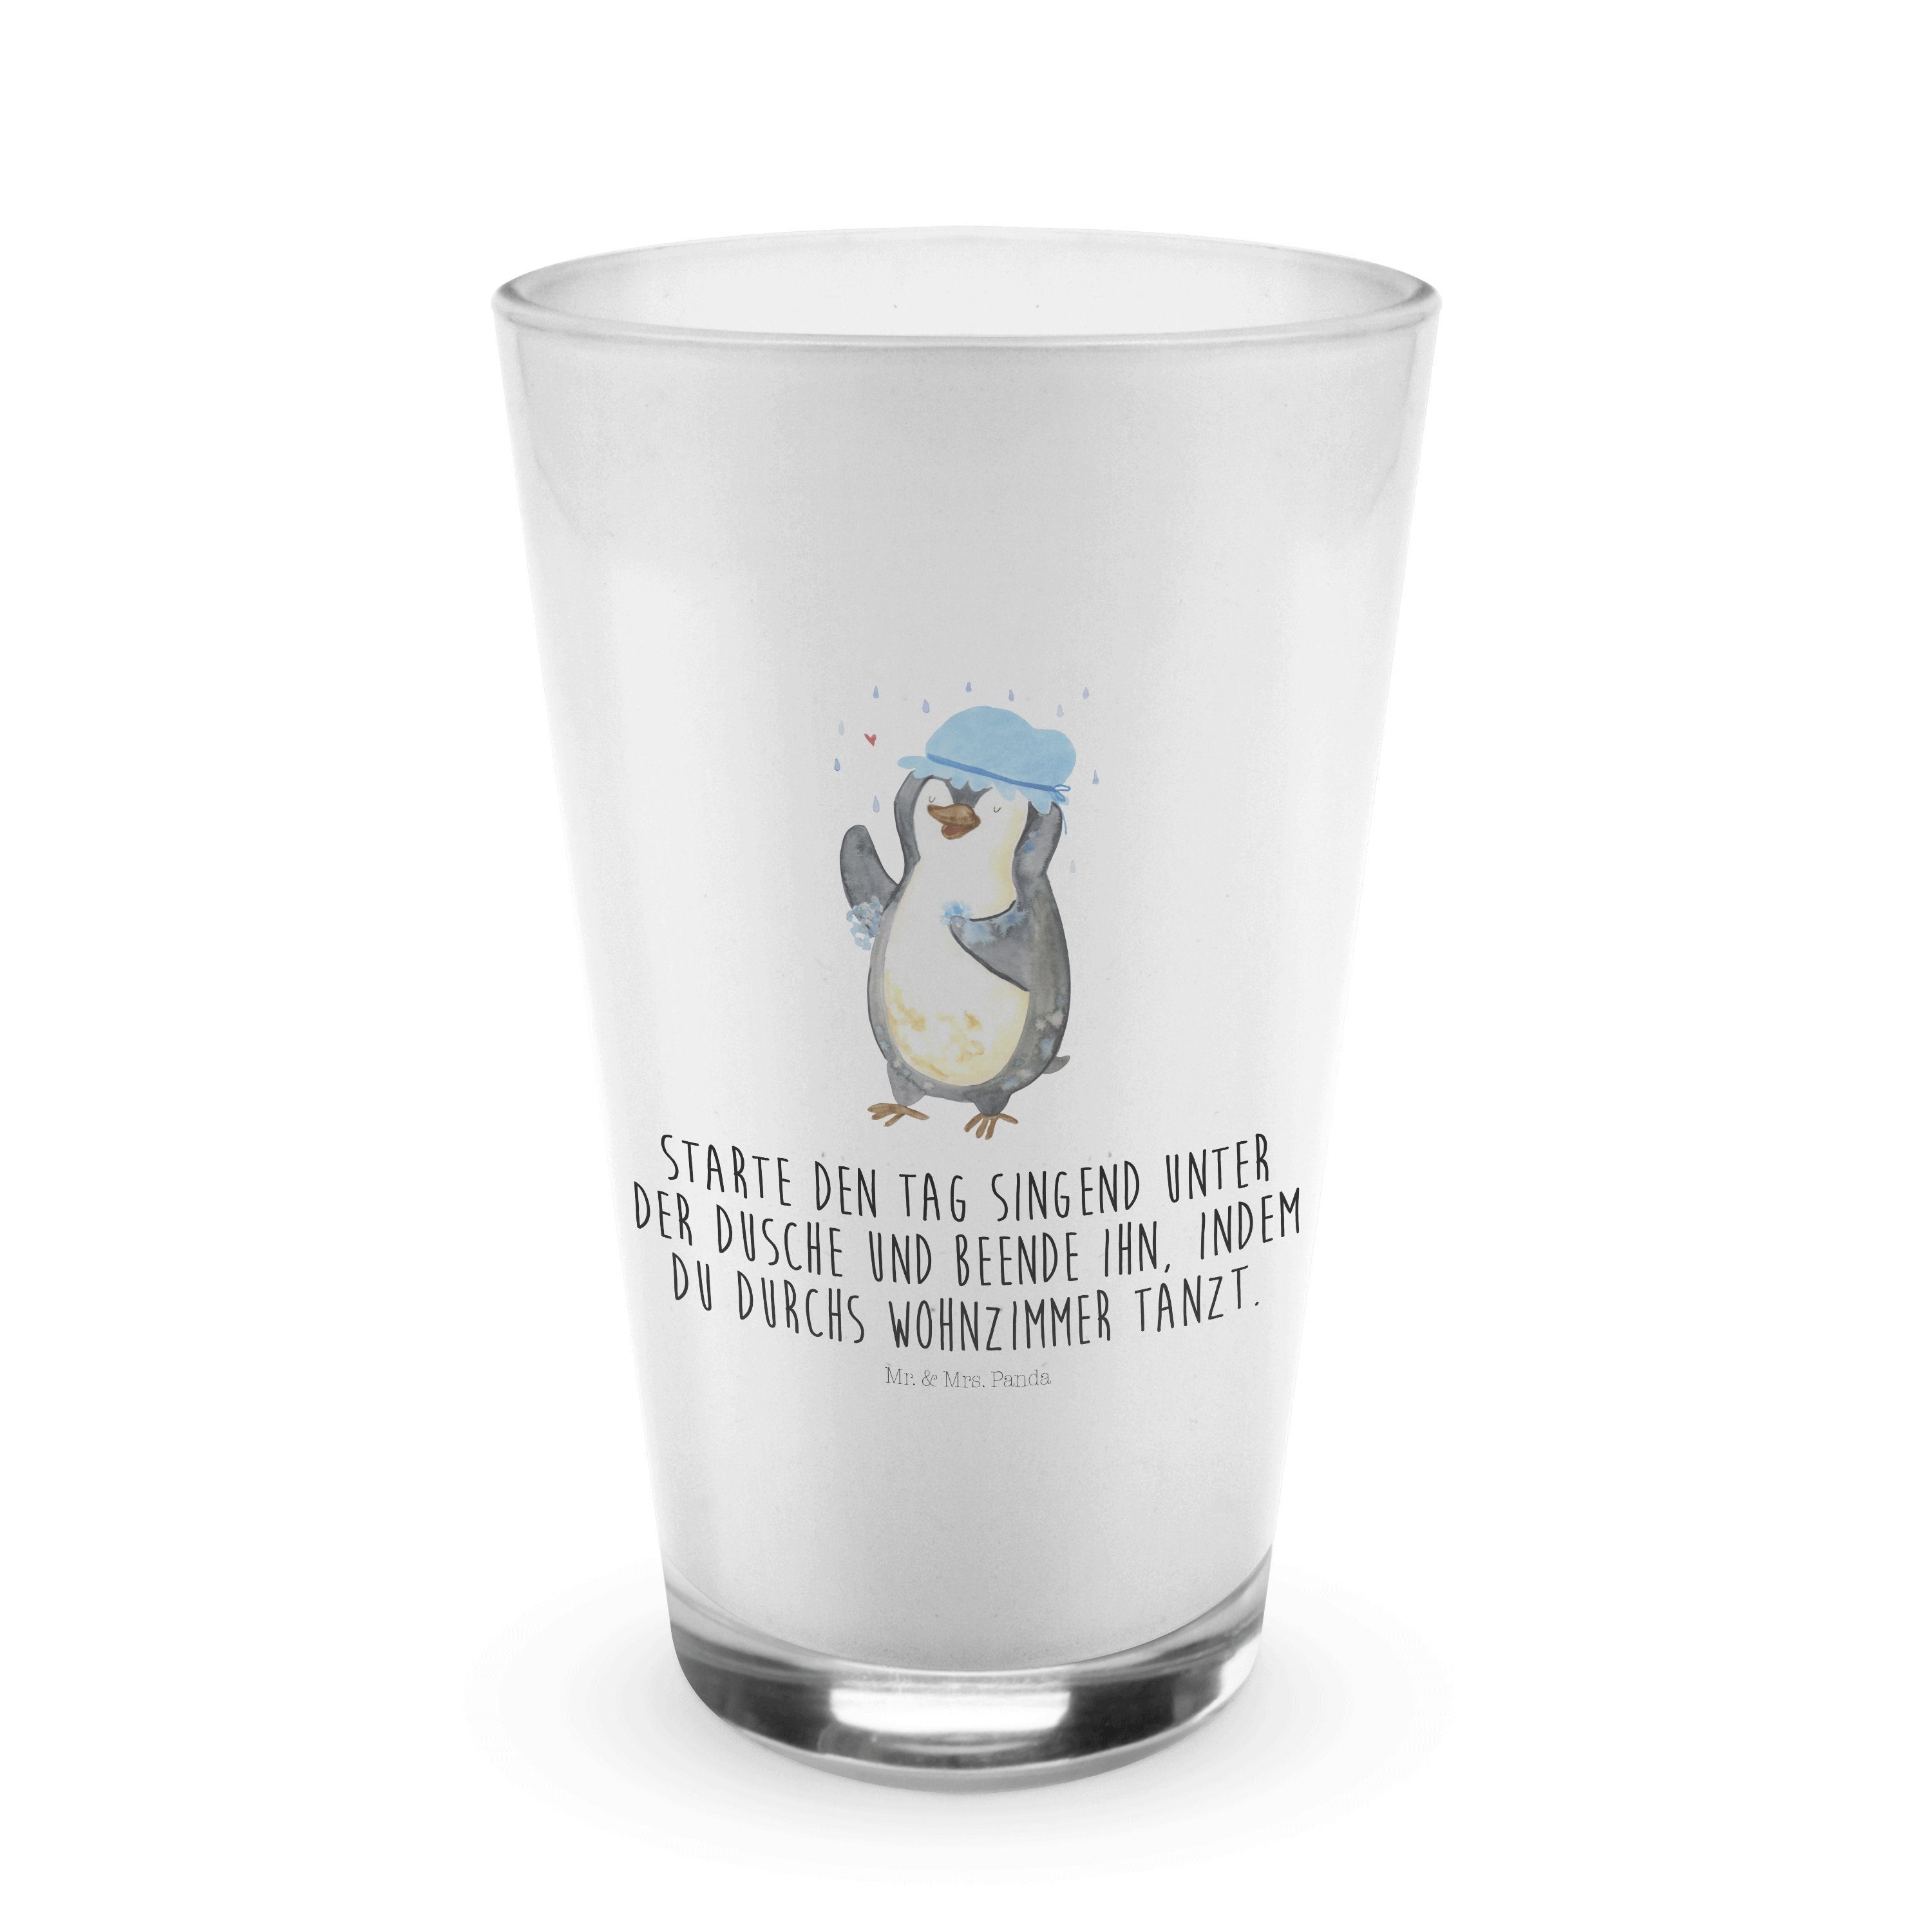 Mr. & Mrs. Panda Glas Pinguin duscht - Transparent - Geschenk, Dusche, Neuanfang, Glas, Cap, Premium Glas